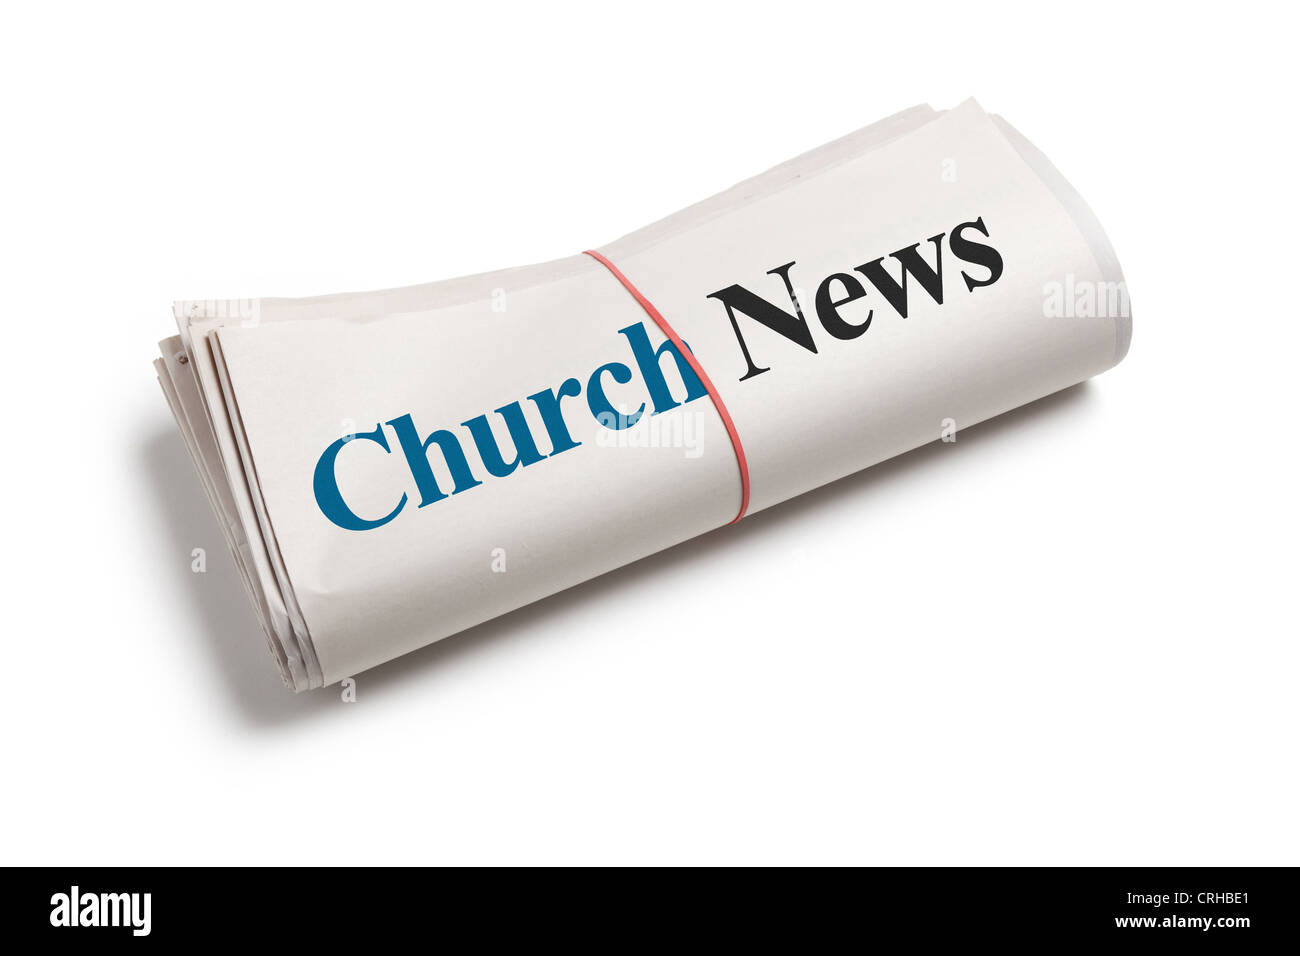 Church News, Zeitung mit weißem Hintergrund Stockfoto